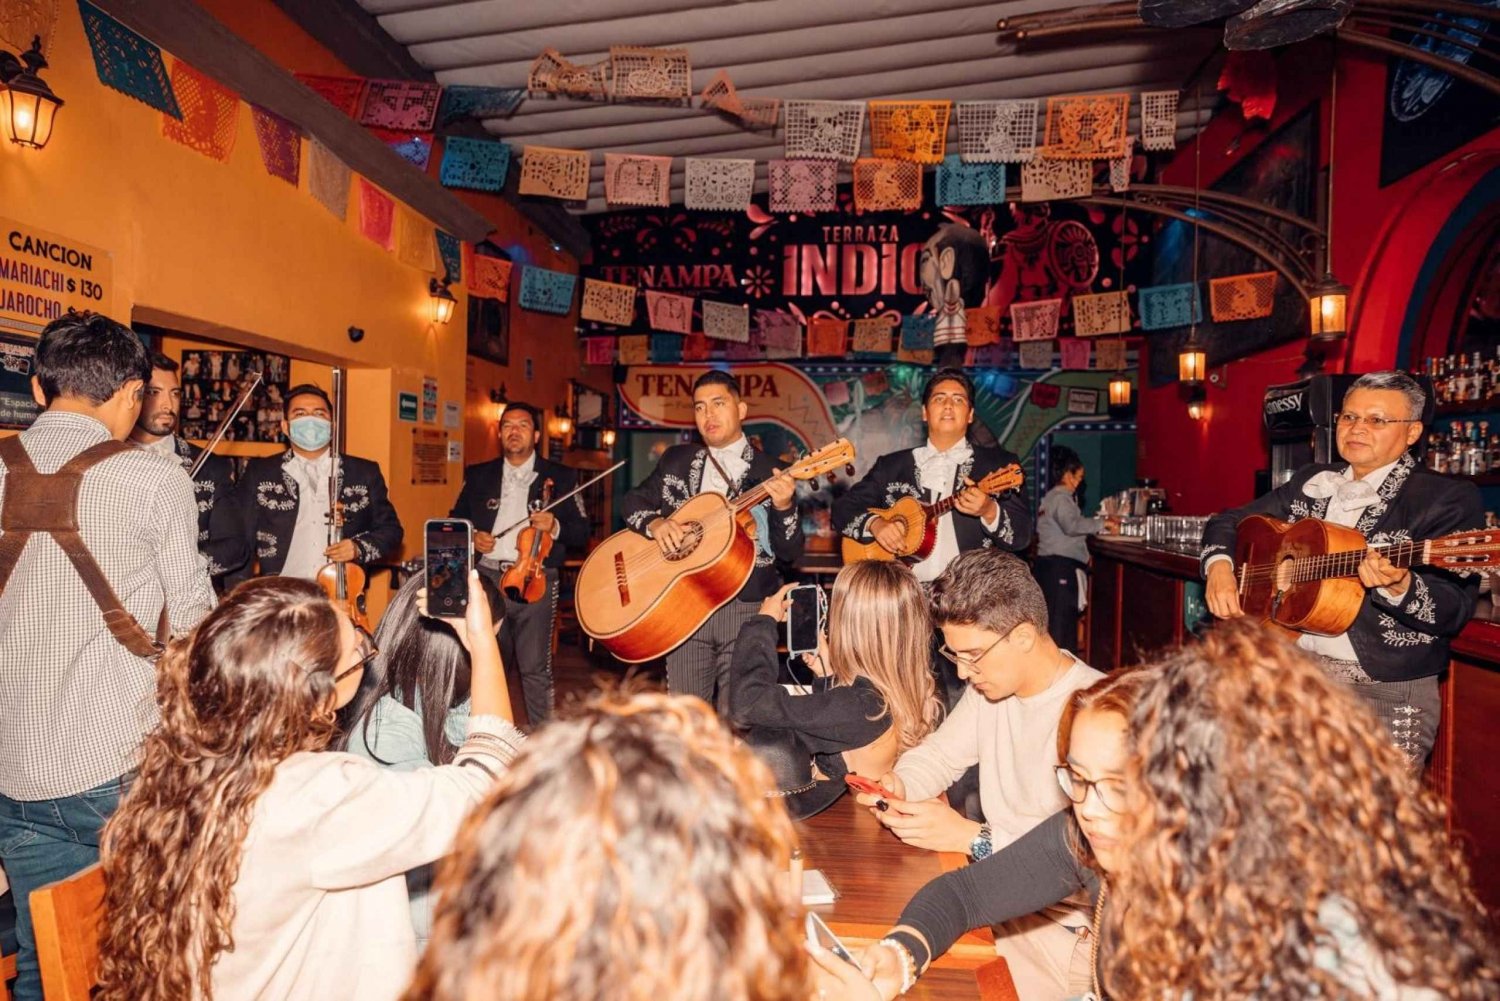 PREMIUM Night Tour: Mariachis, Show Garibaldi & Tacos